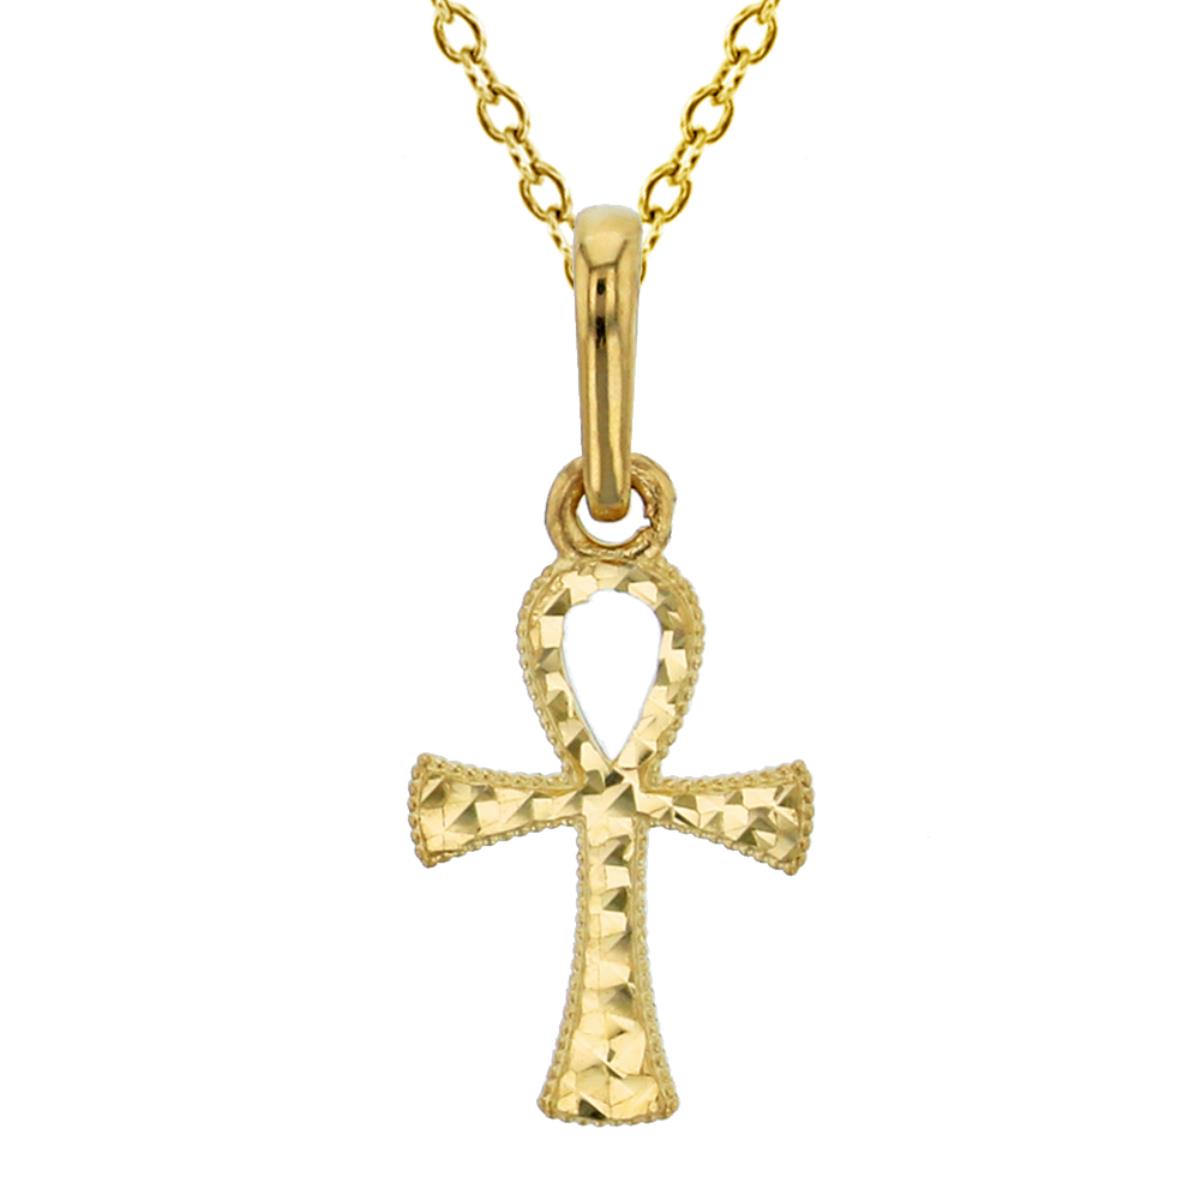 10K Yellow Gold Diamond Cut Small Ankh Cross 18" Necklace